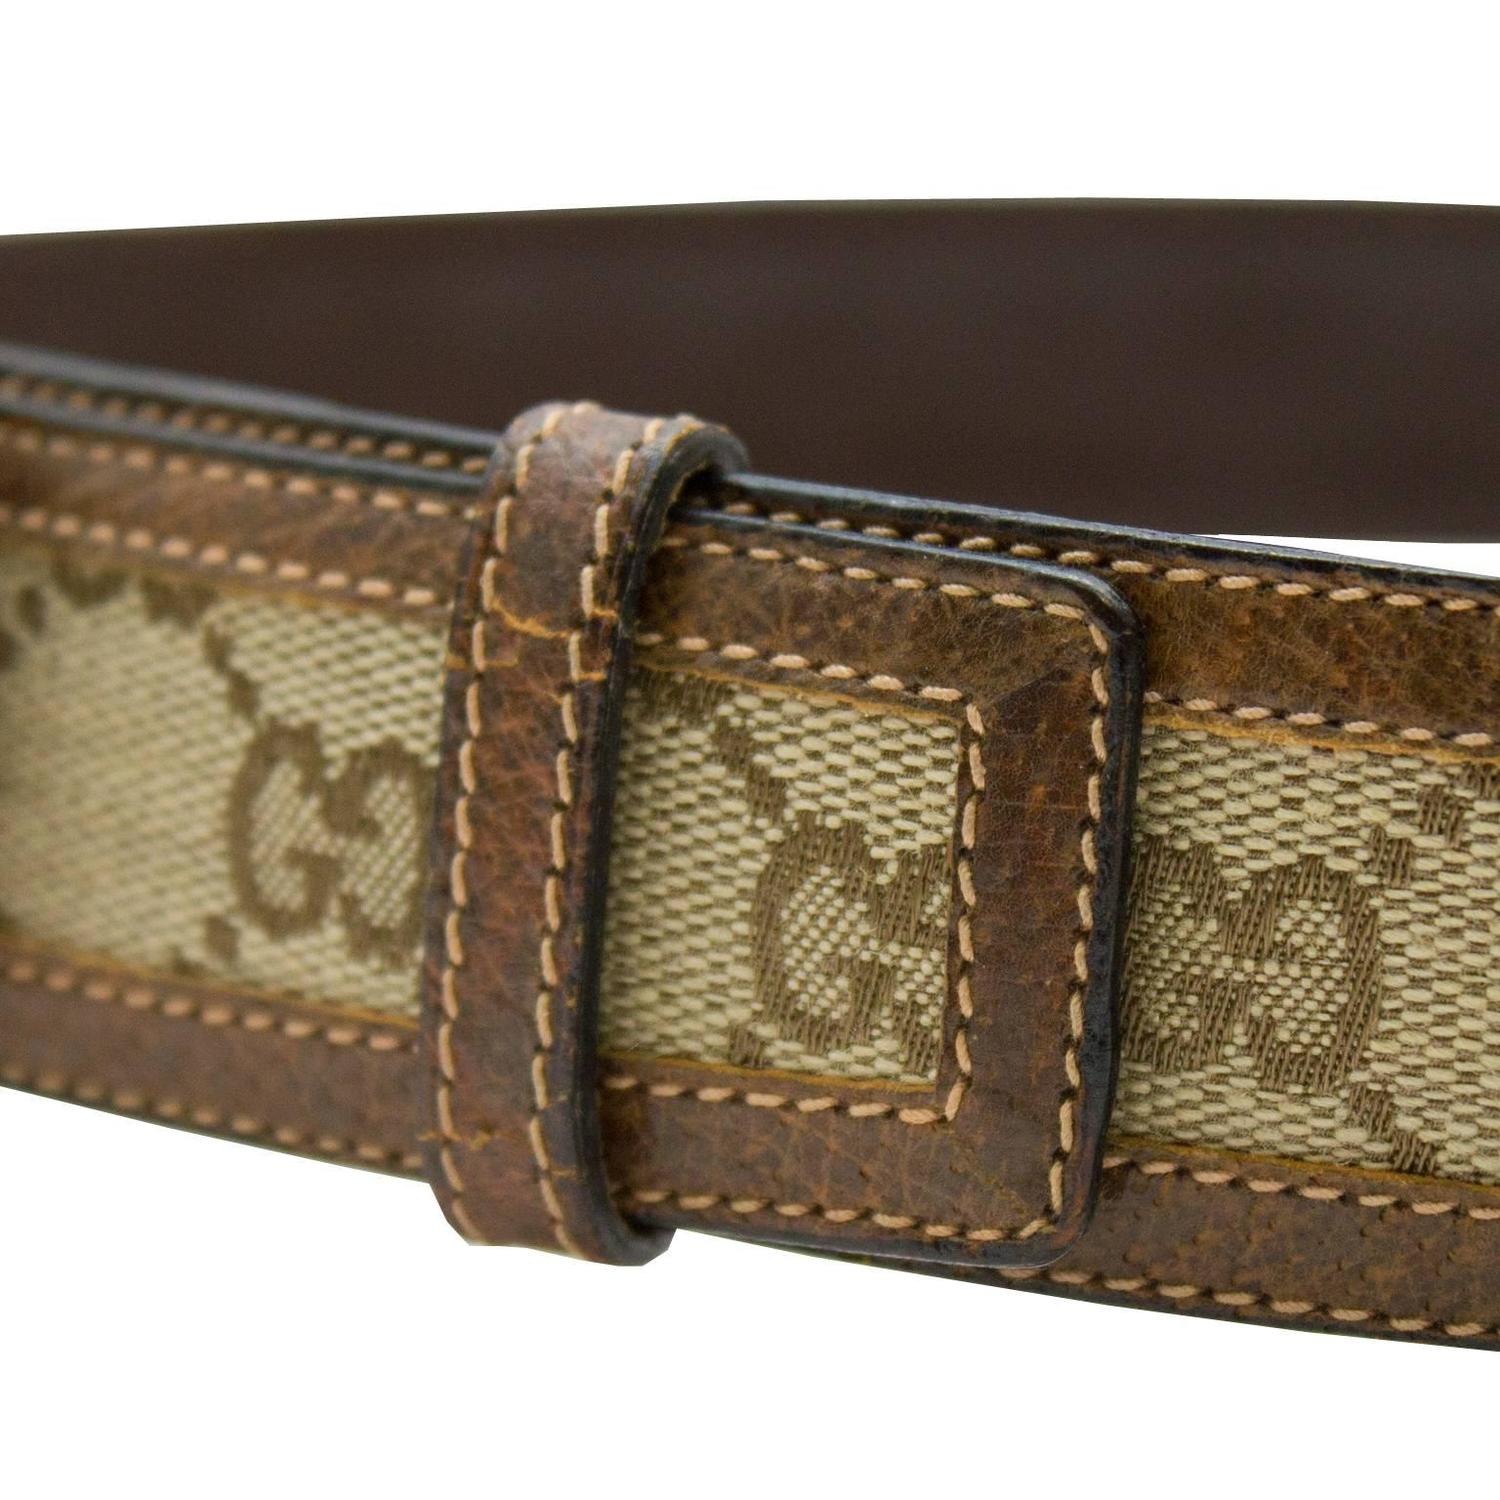 1970s Gucci Monogram Belt For Sale at 1stdibs